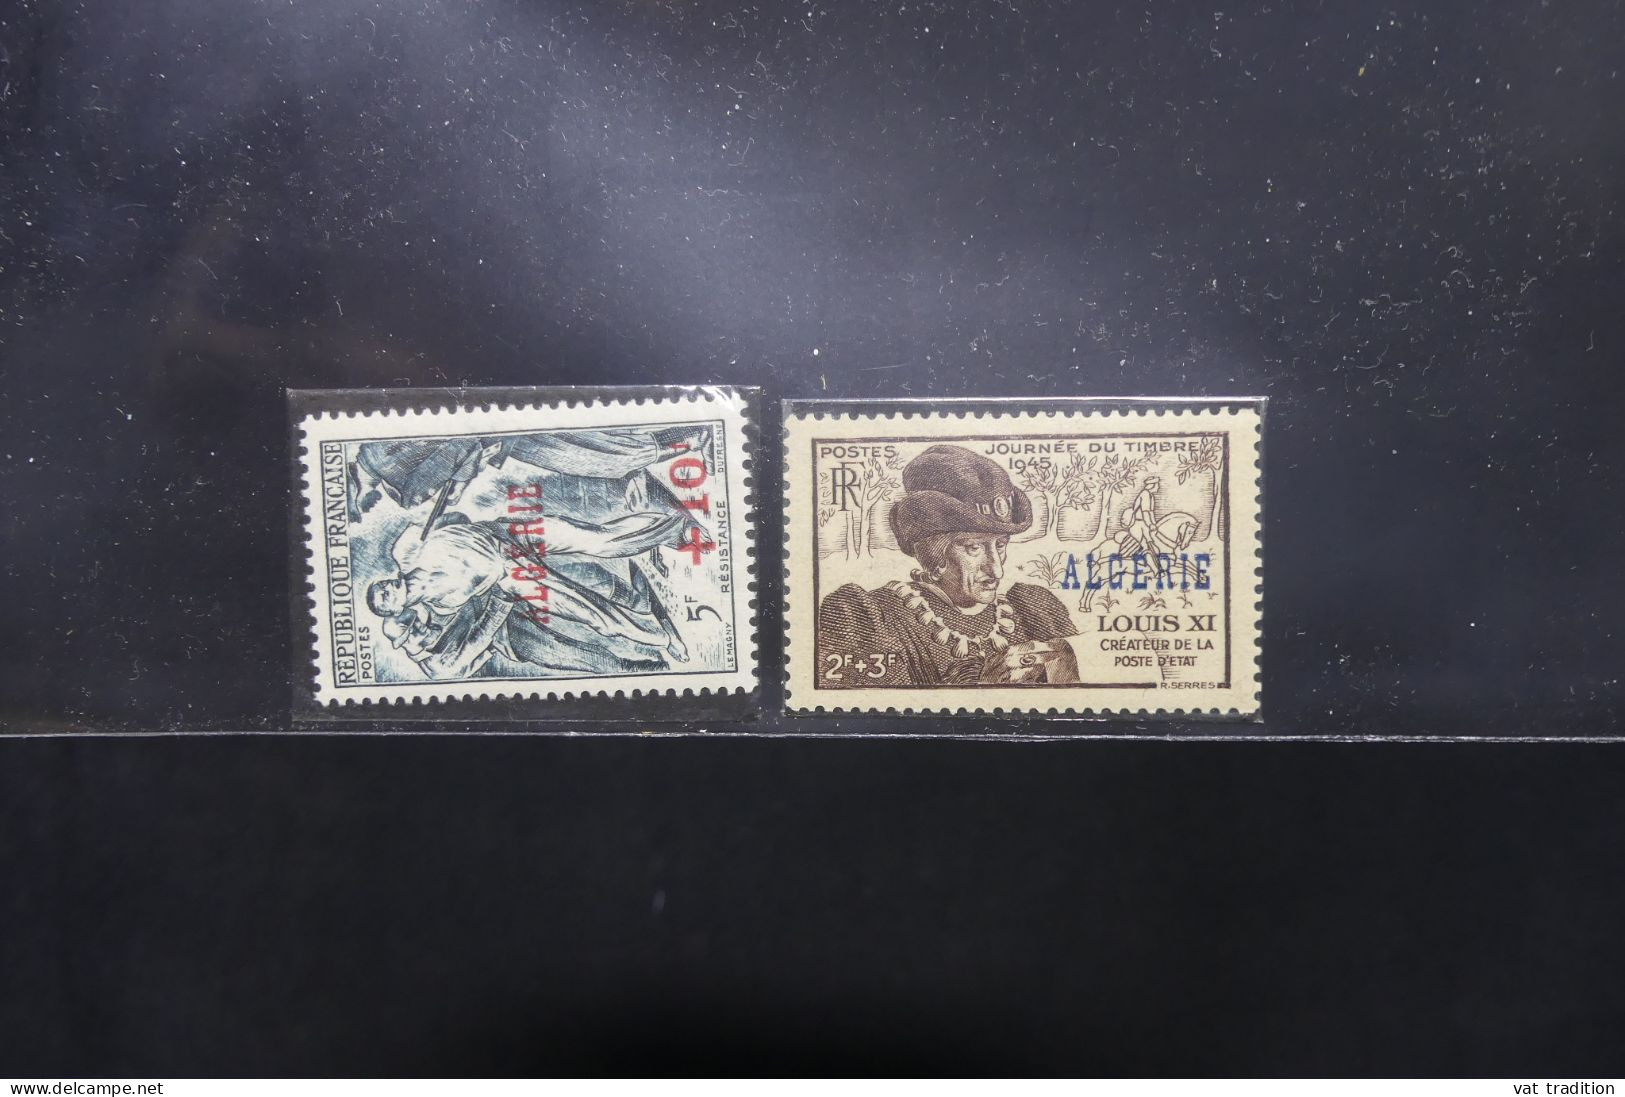 ALGERIE - Petite collection mais les timbres sont luxes ** - Les charnières sont sur les bords de feuille - A 57